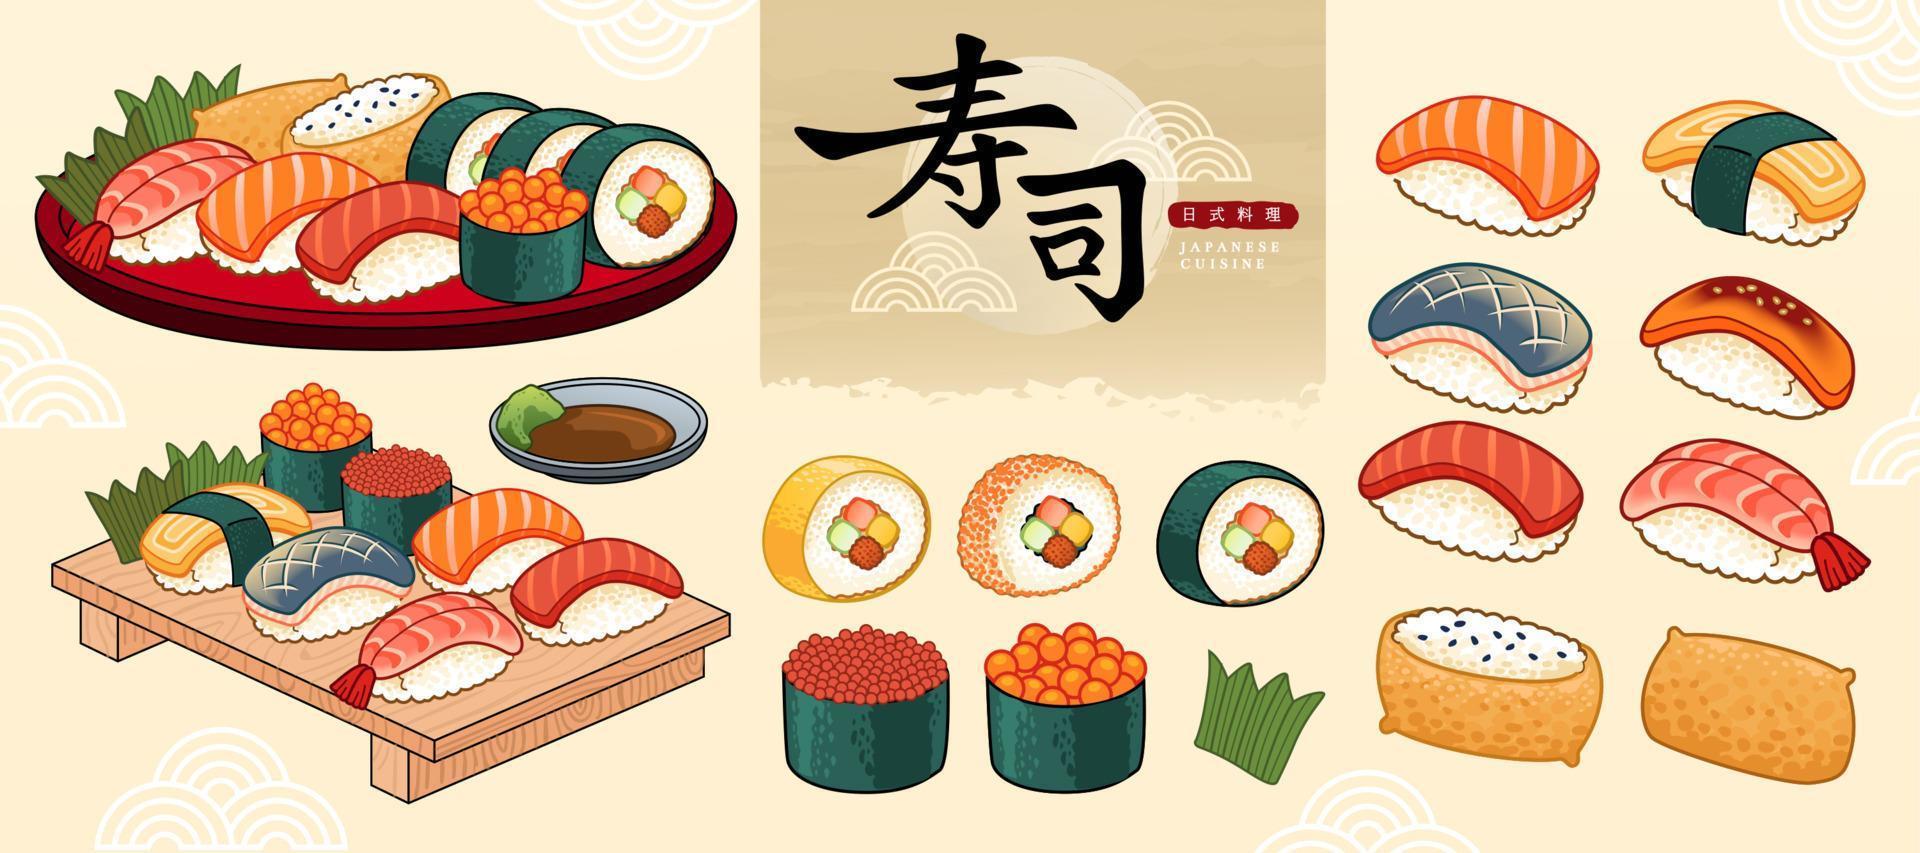 sushi bar mat samling i ukiyo-e stil, japansk mat och sushi skriven i kinesisk text vektor